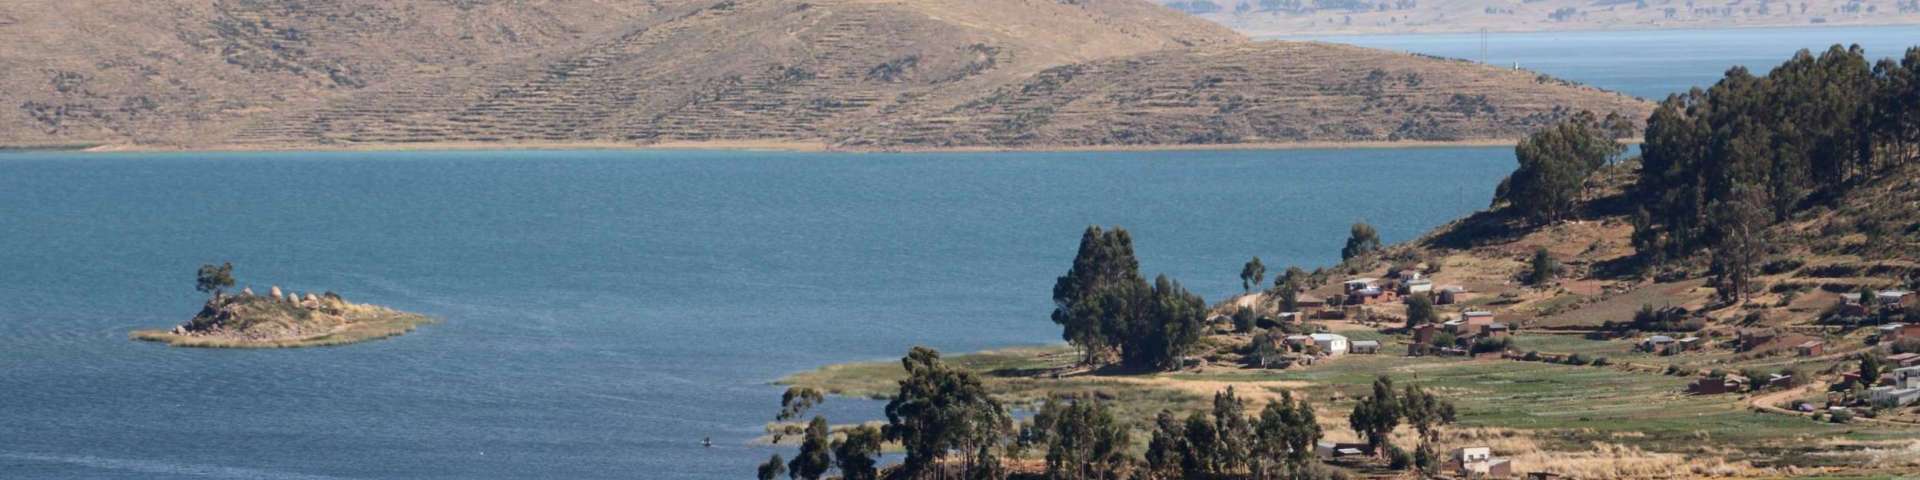 Around the Lake Titicaca